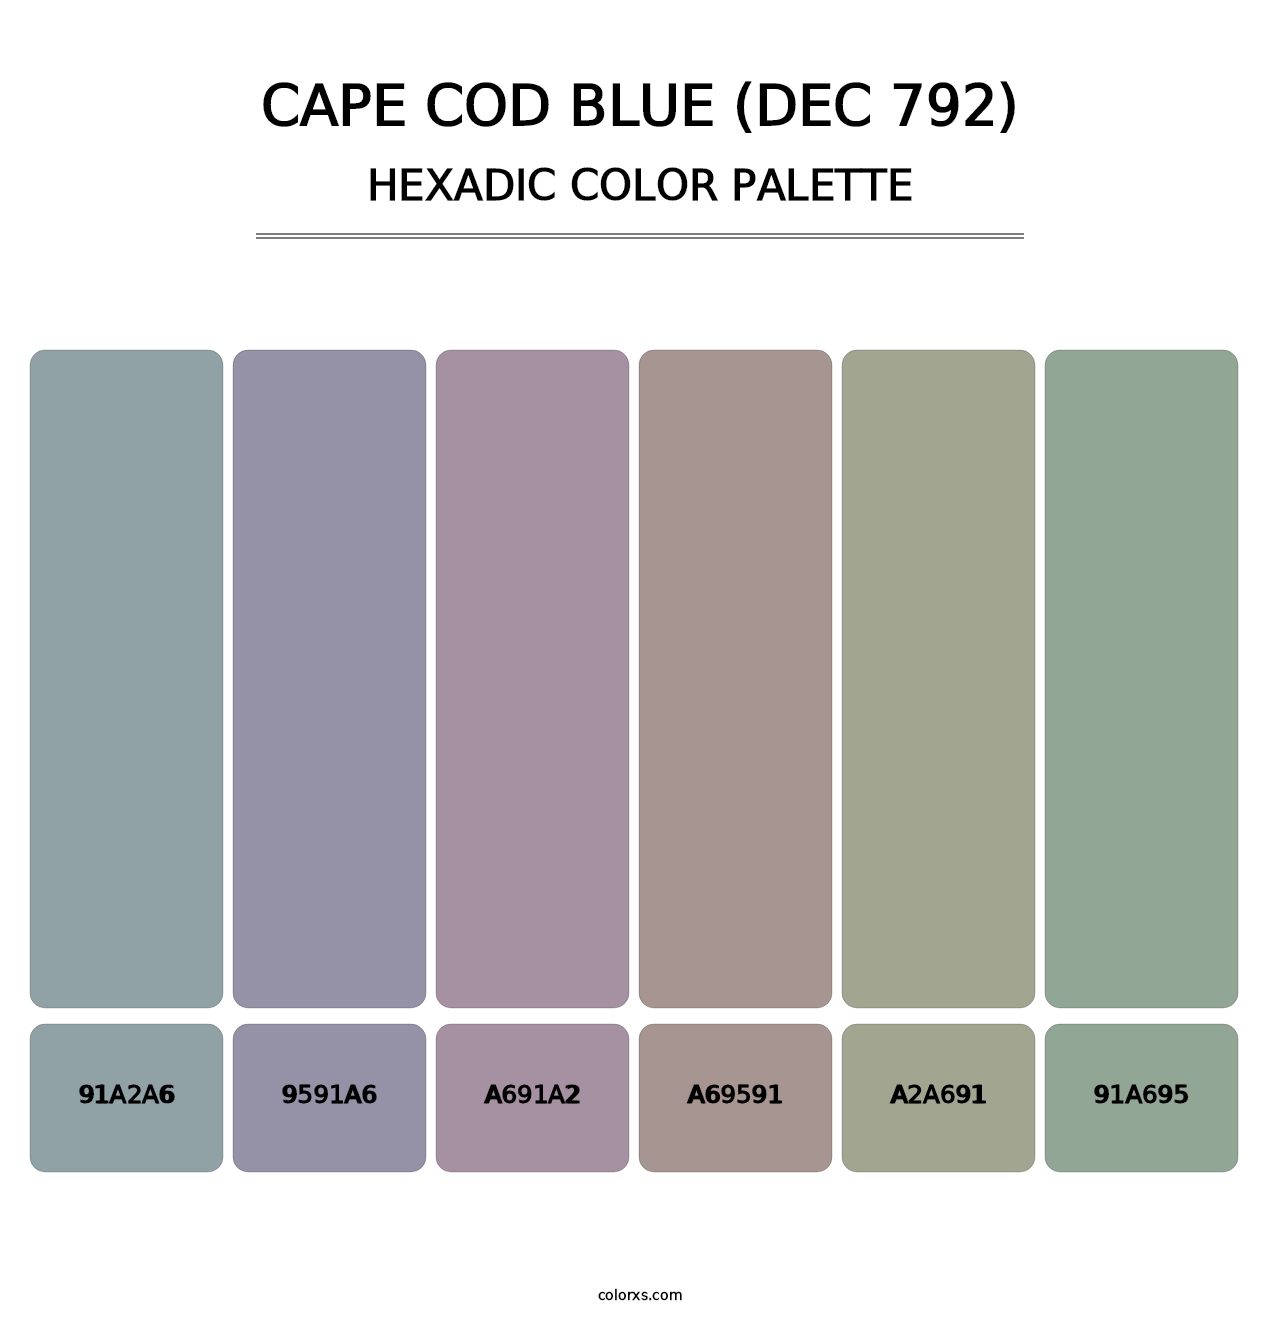 Cape Cod Blue (DEC 792) - Hexadic Color Palette